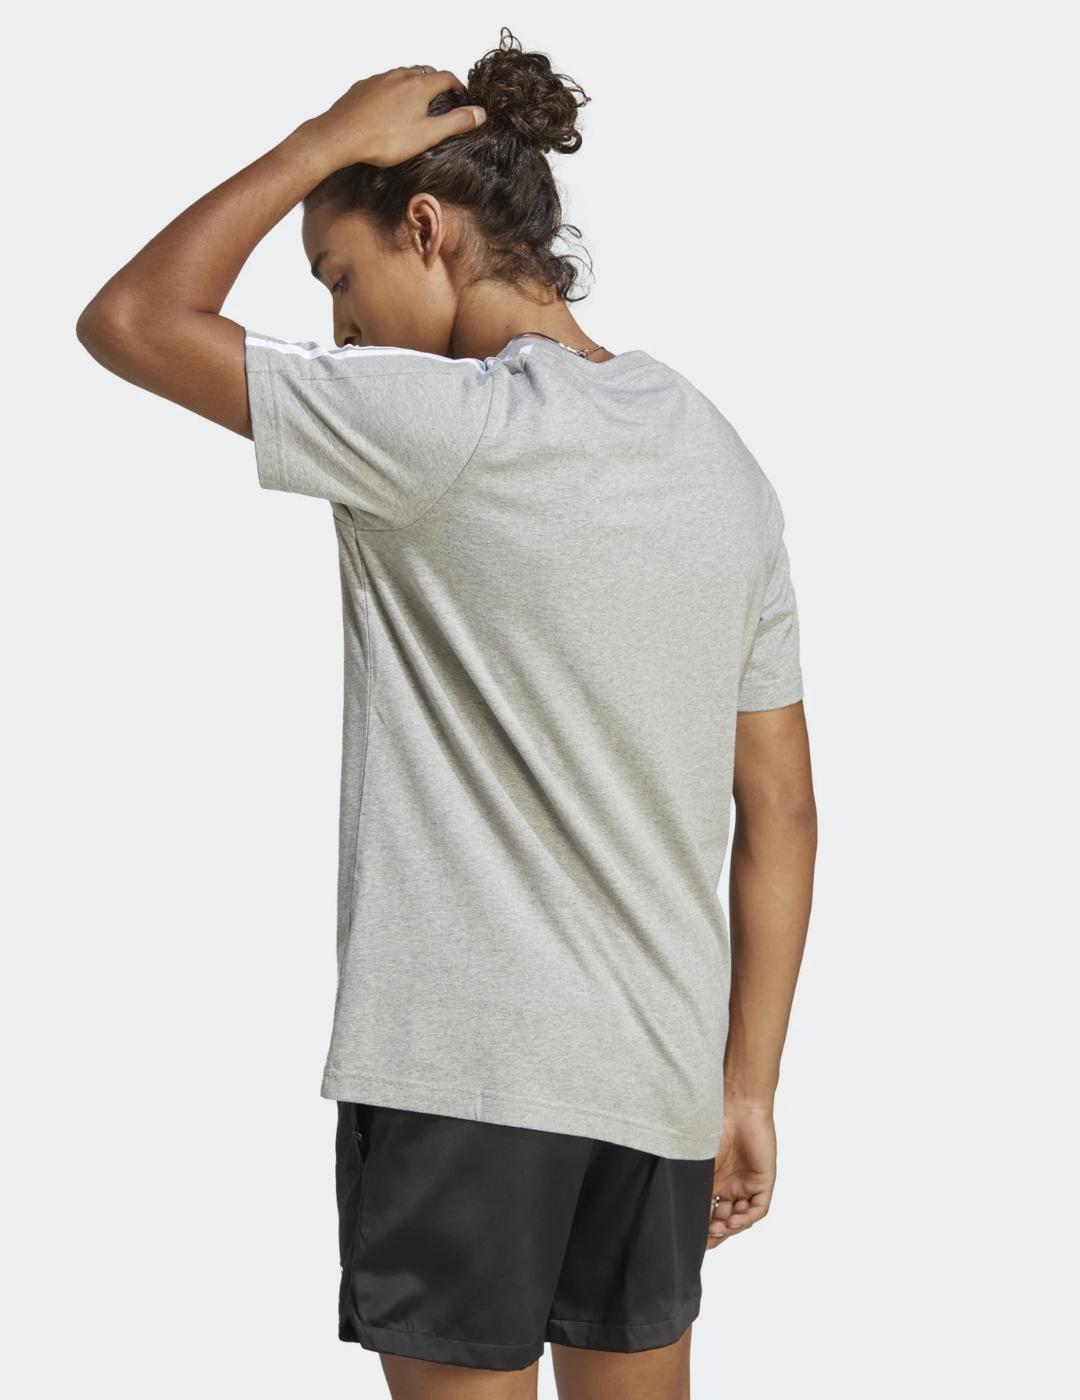 Camiseta Adidas gris basica unisex